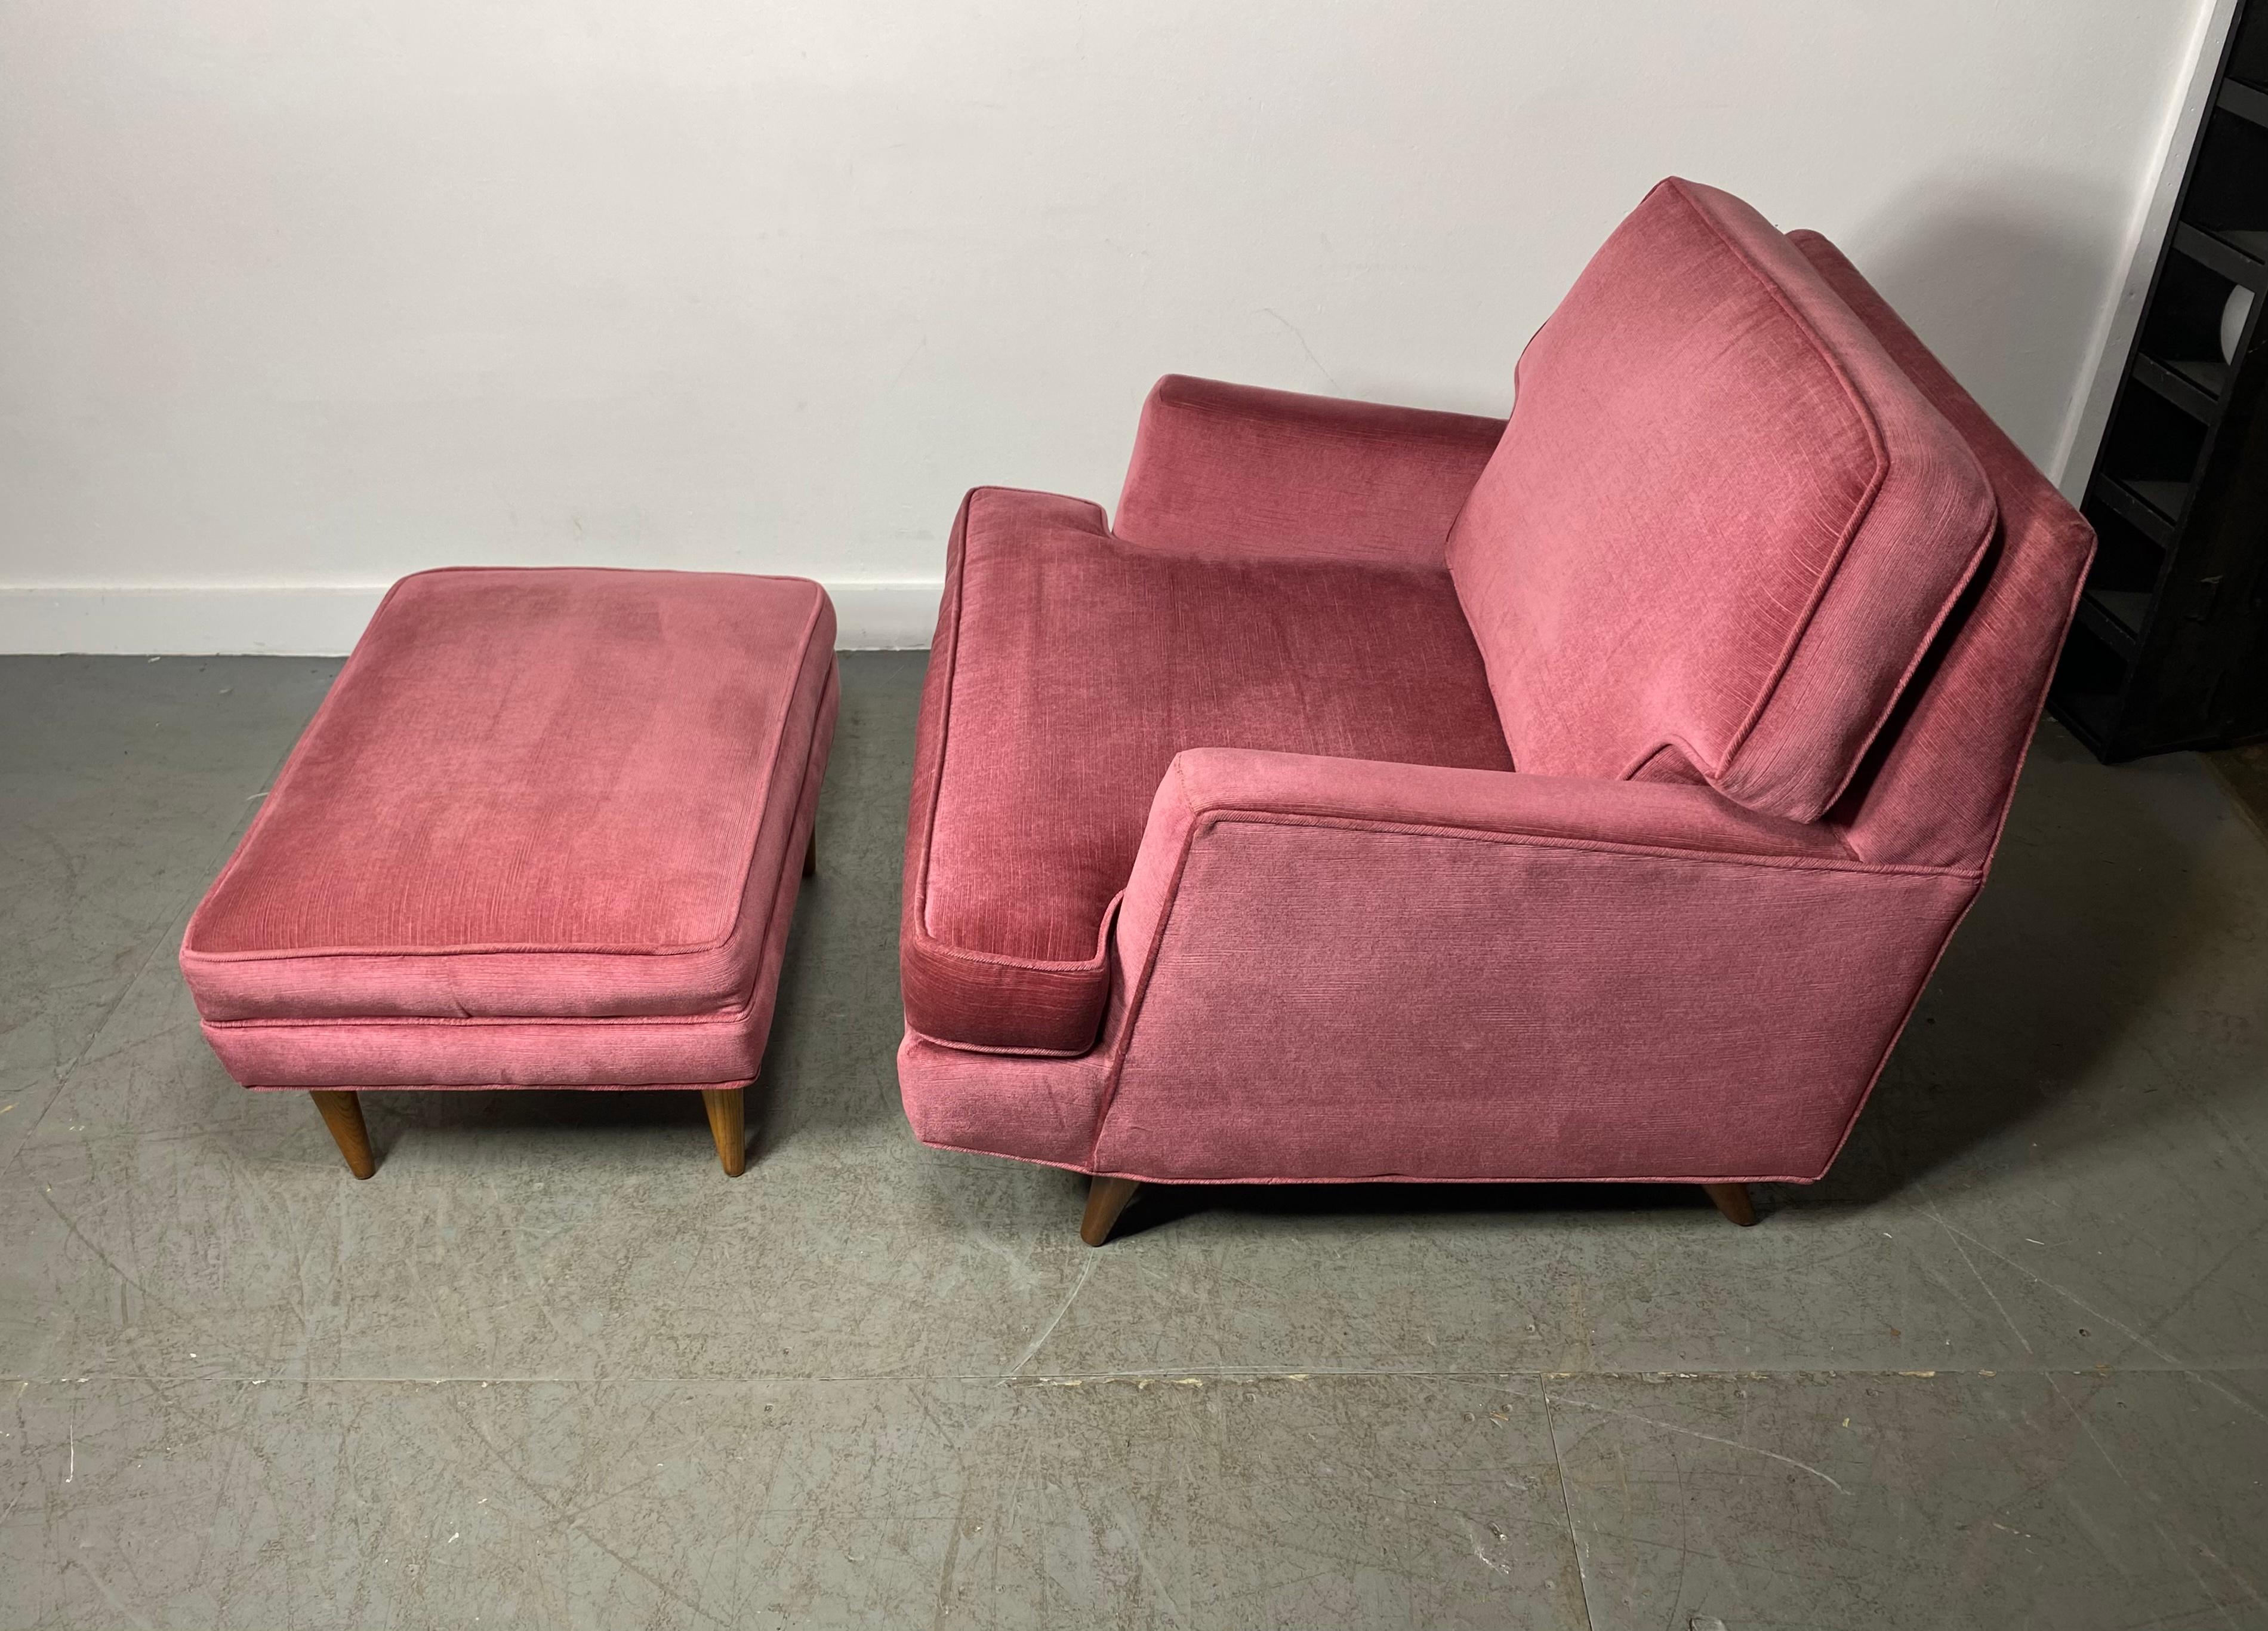 Stunning Modernist Lounge Chair & Ott Oman by Roger Springer for Dunbar For Sale 1